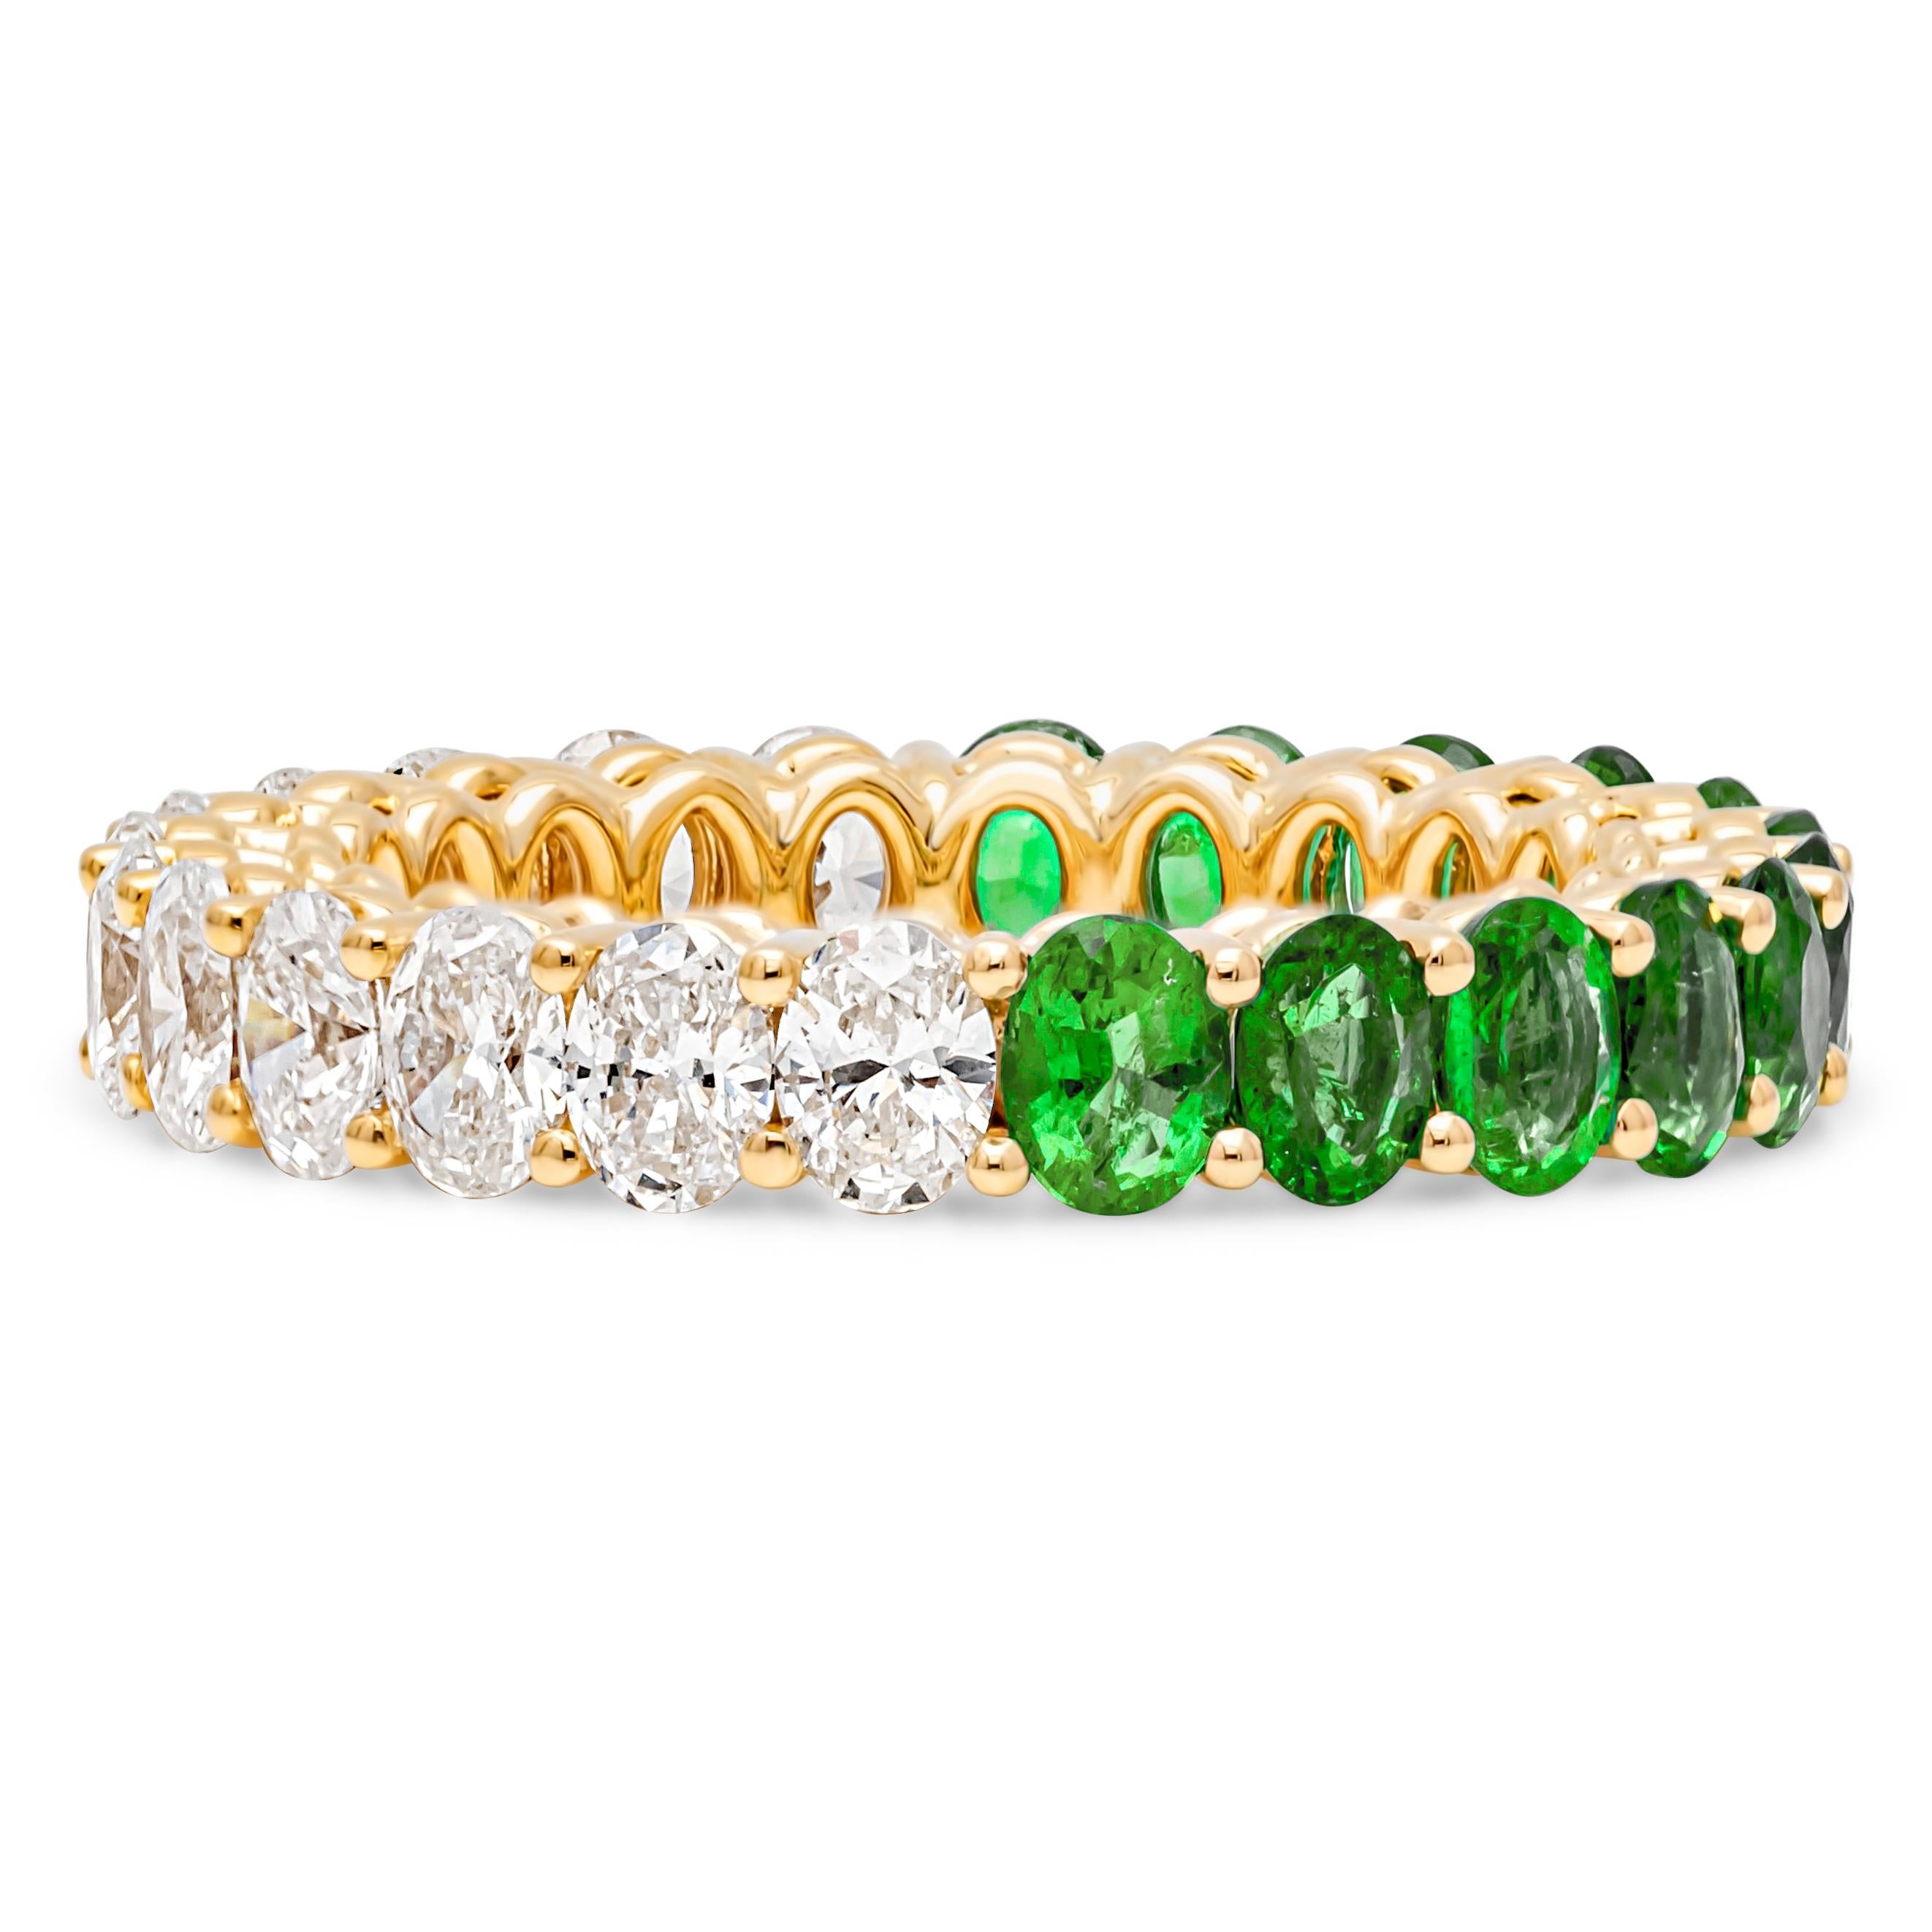 Ein wunderschöner und lebendiger Ehering mit einem farbenprächtigen grünen Smaragd im Ovalschliff mit einem Gesamtgewicht von 1,69 Karat und 10 Diamanten im Brillant-Ovalschliff mit einem Gesamtgewicht von 1,68 Karat, die in einer gemeinsamen